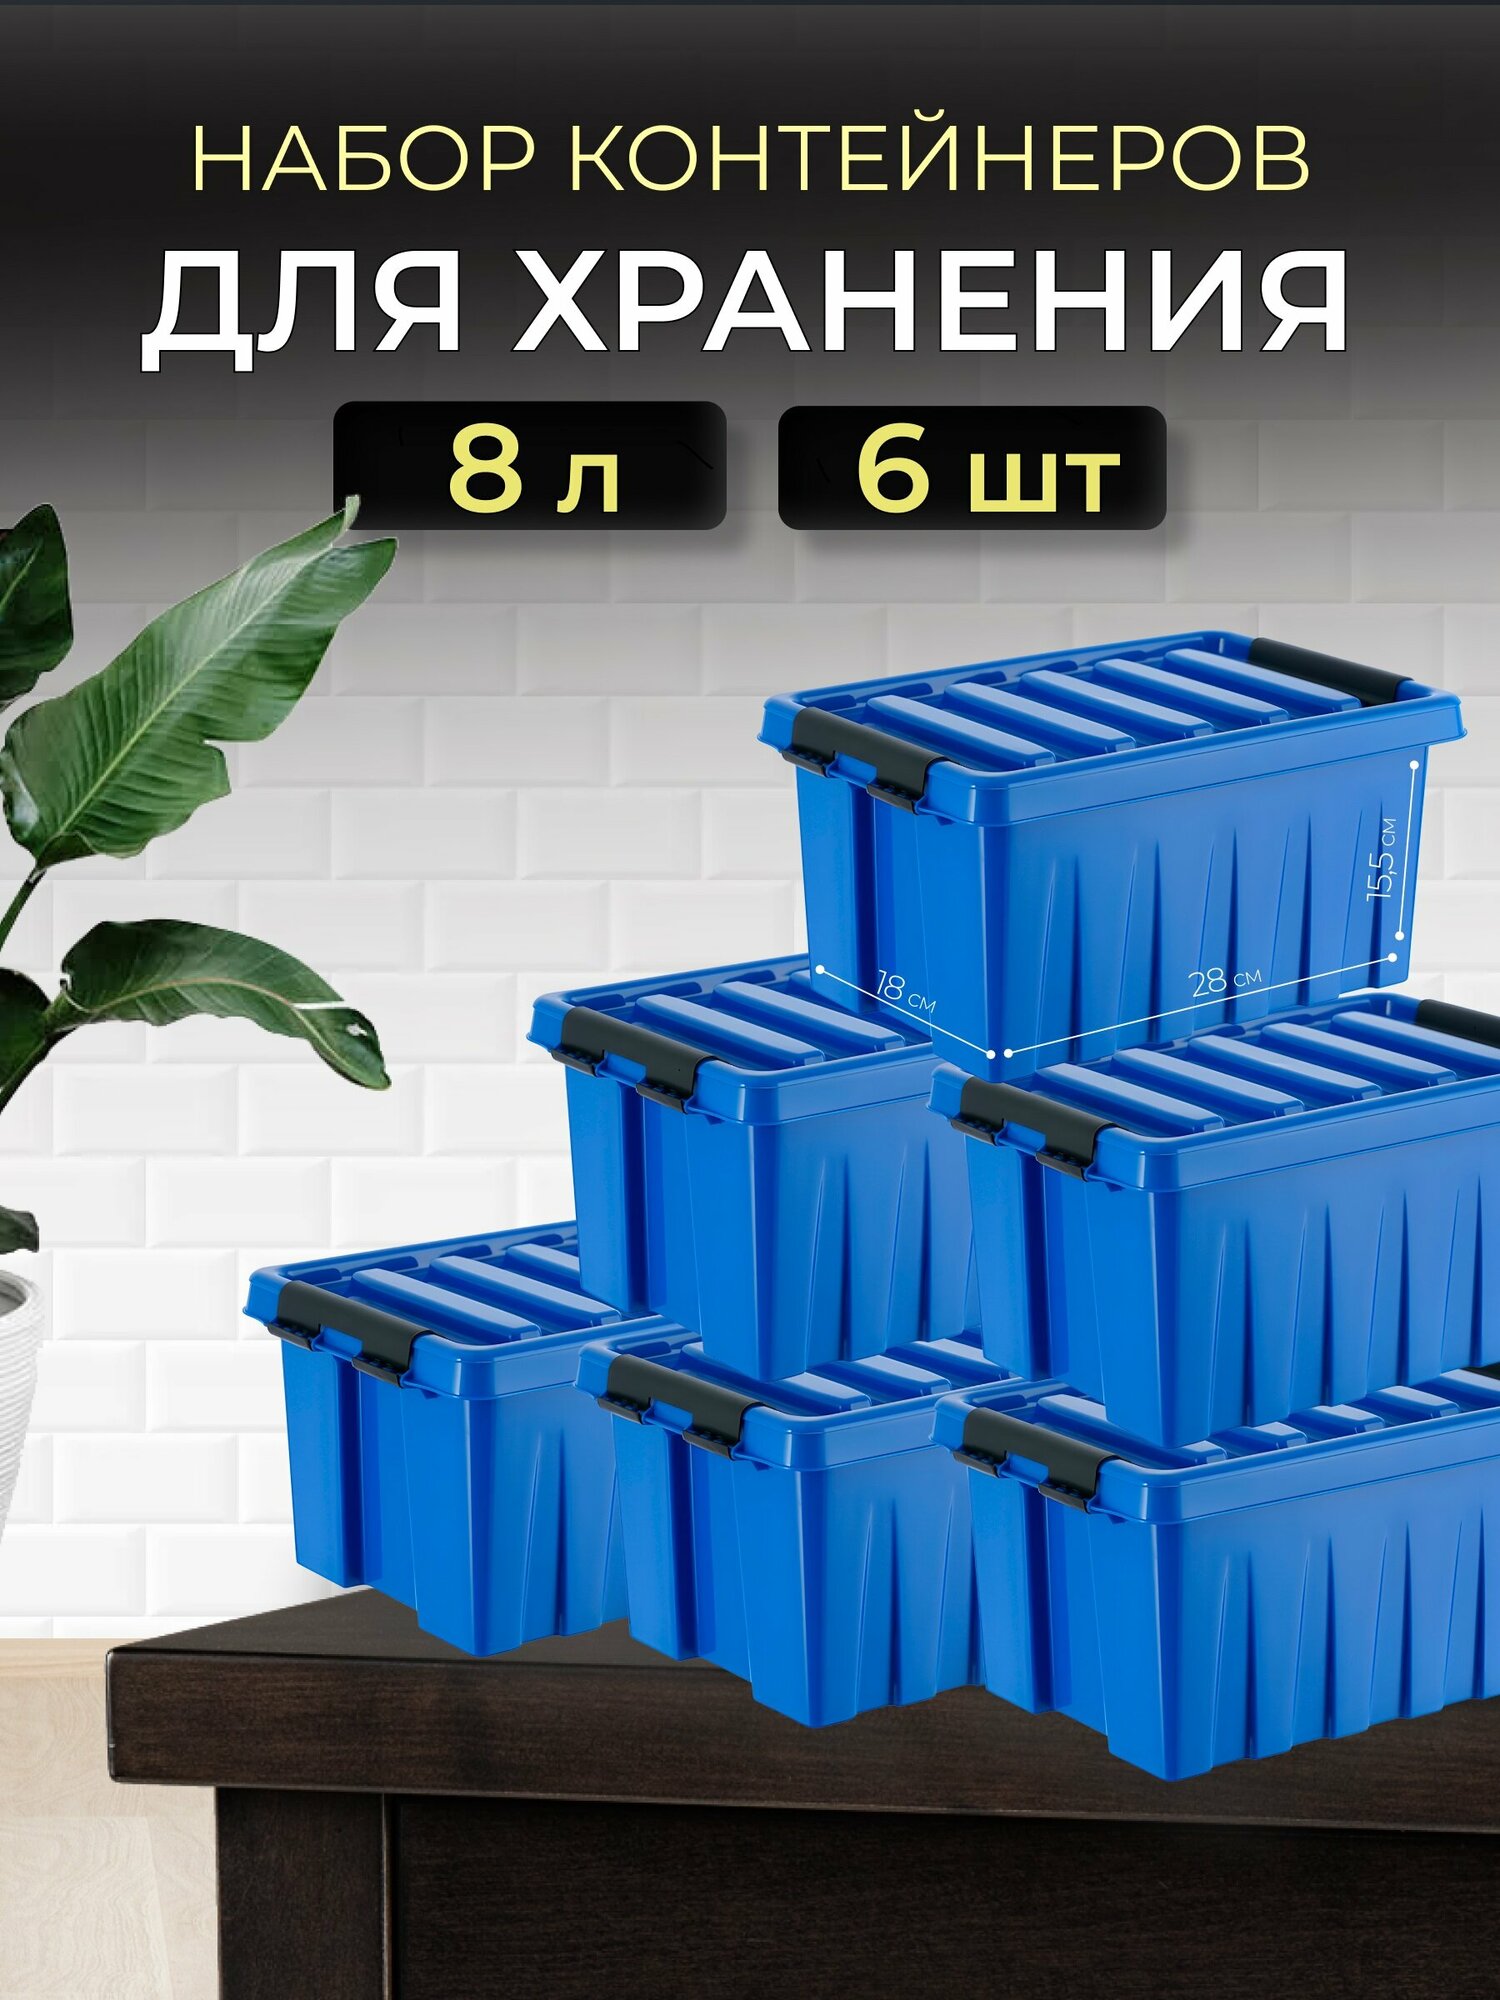 Ящик для хранения пластиковый с крышкой на защелках для хранения лекарств игрушек мелочей сыпучих продуктов стирального порошка корма для животных RoxBox 8 литров набор 6 шт.